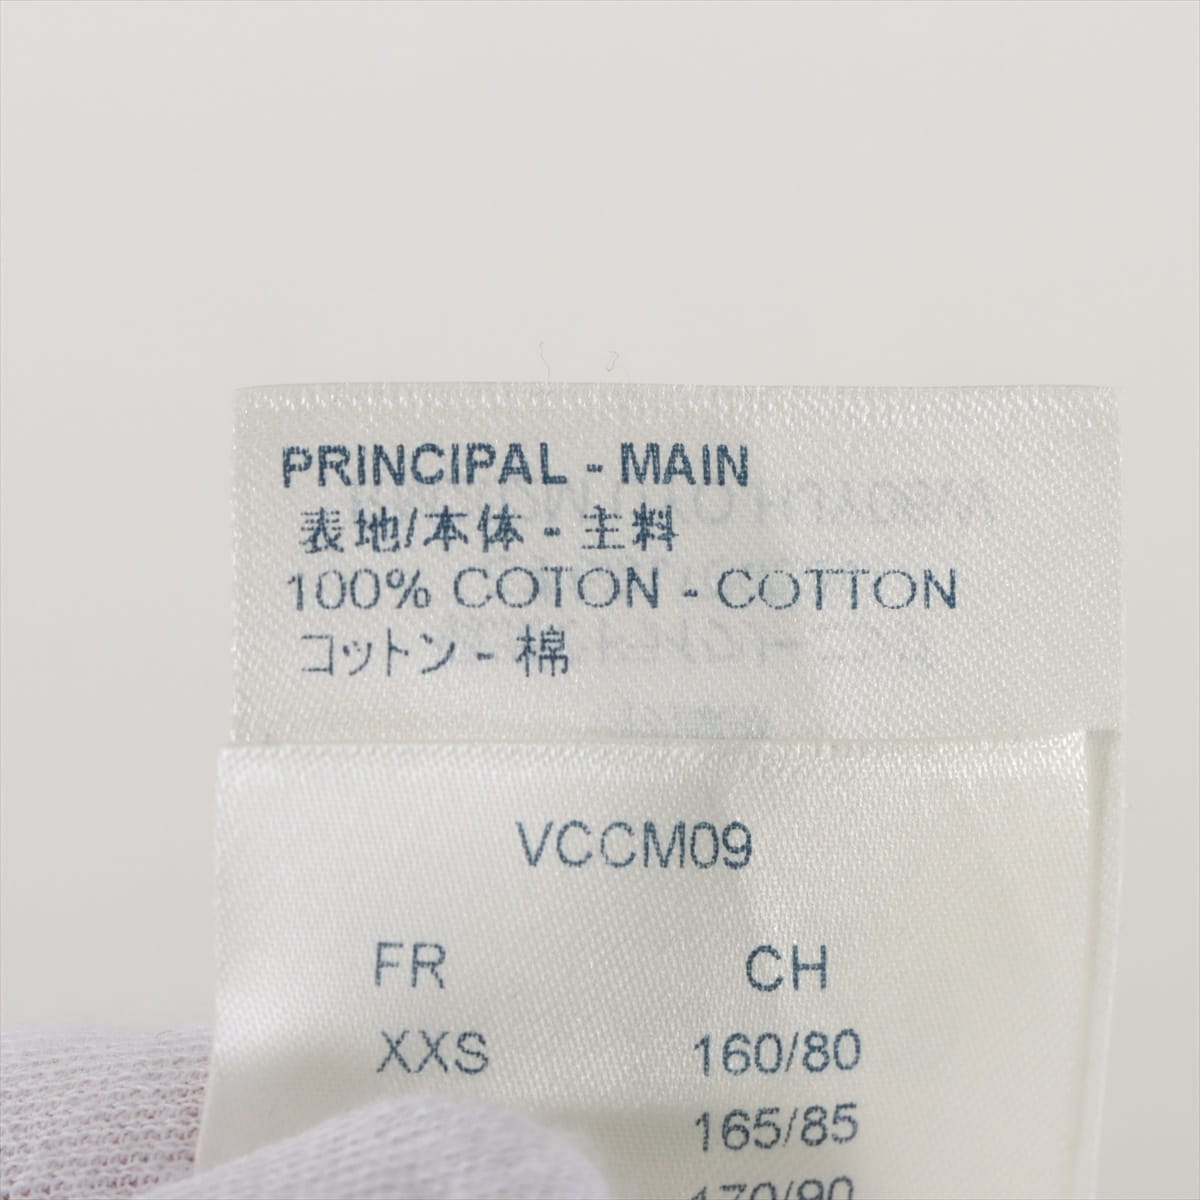 ルイヴィトン 20AW コットン Tシャツ XL メンズ ブラック×グレー  RM202M